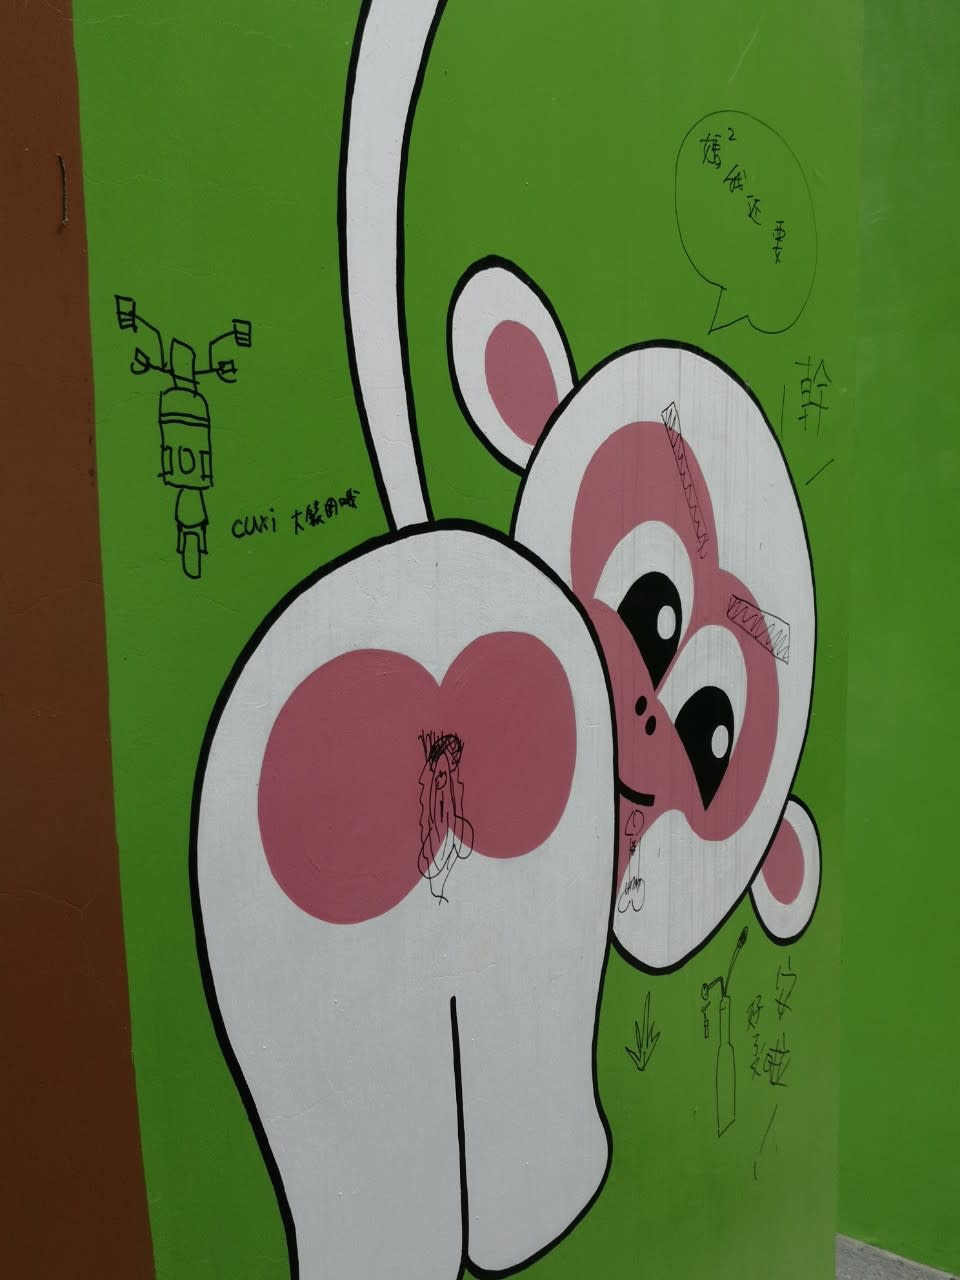 中和錦和運動公園有毒蟲出沒，剛完工的親子廁所彩繪牆面也被塗鴉，畫上「吸毒器」圖案。&nbsp;&nbsp;&nbsp;圖：張志豪服務處提供